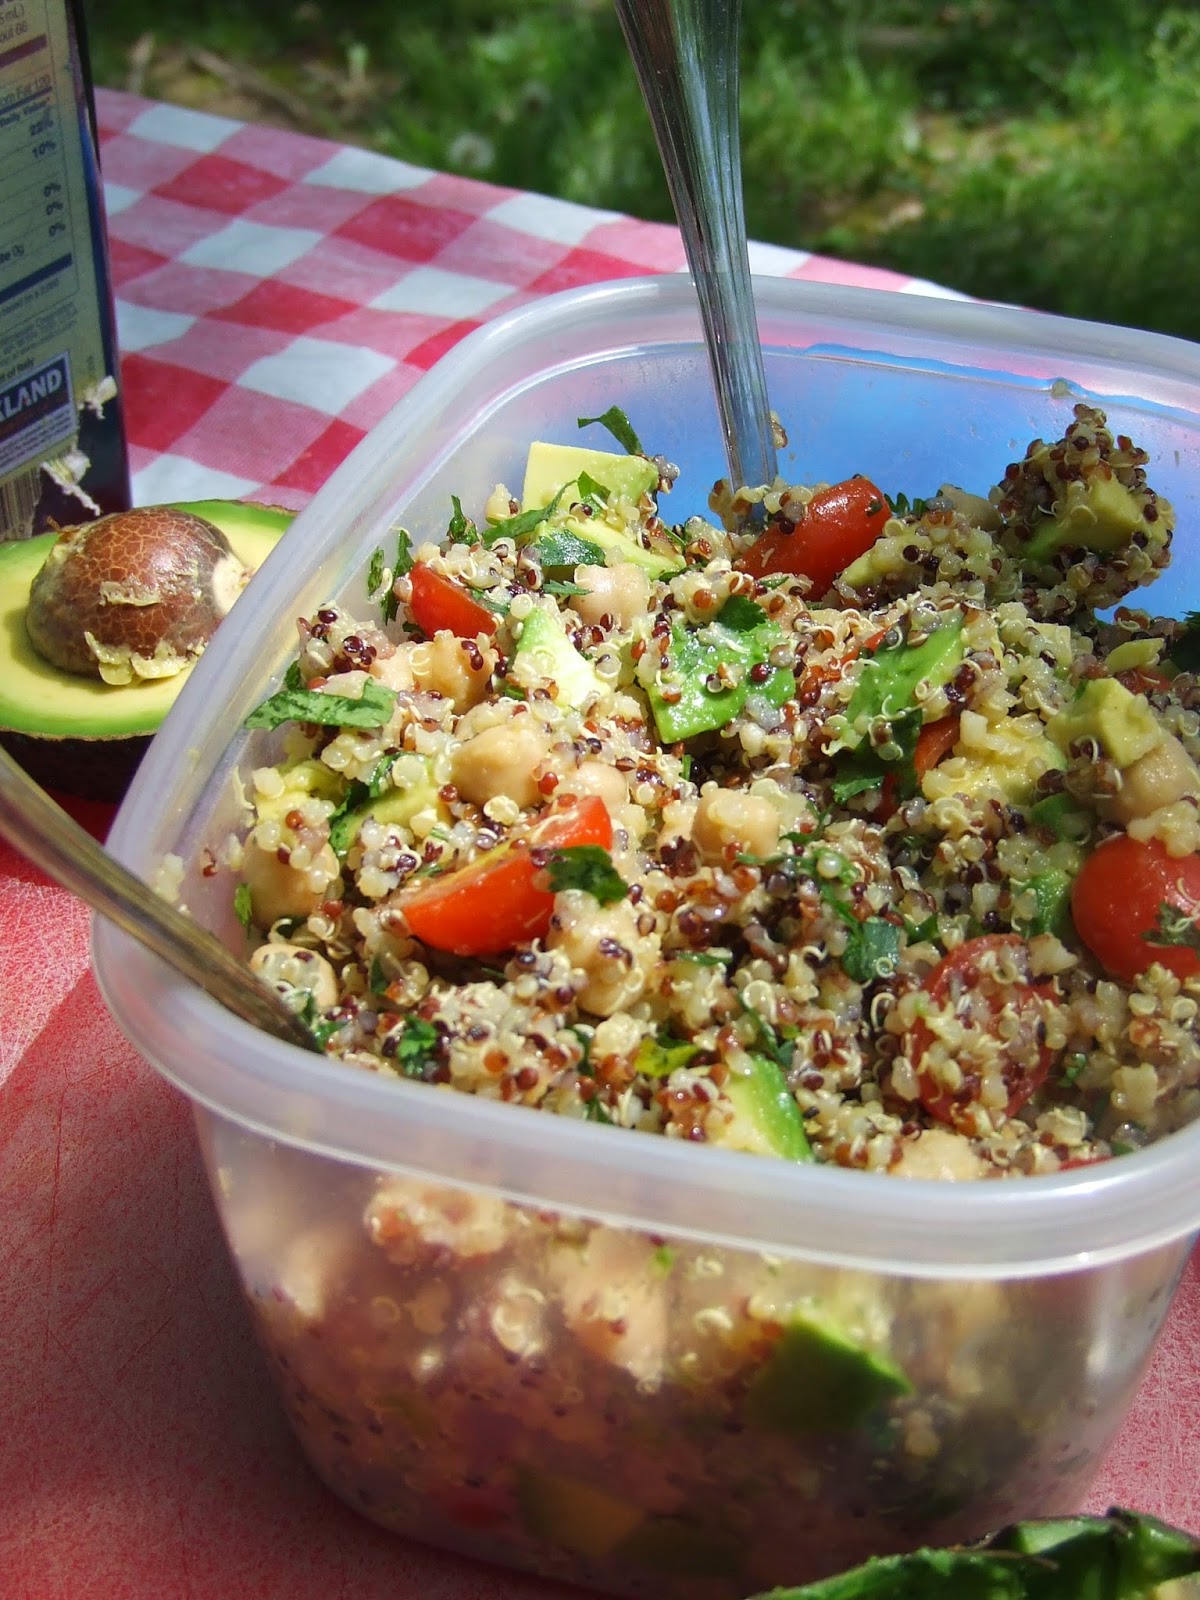 The Conscientious Eater: Cilantro Lemon Quinoa Salad